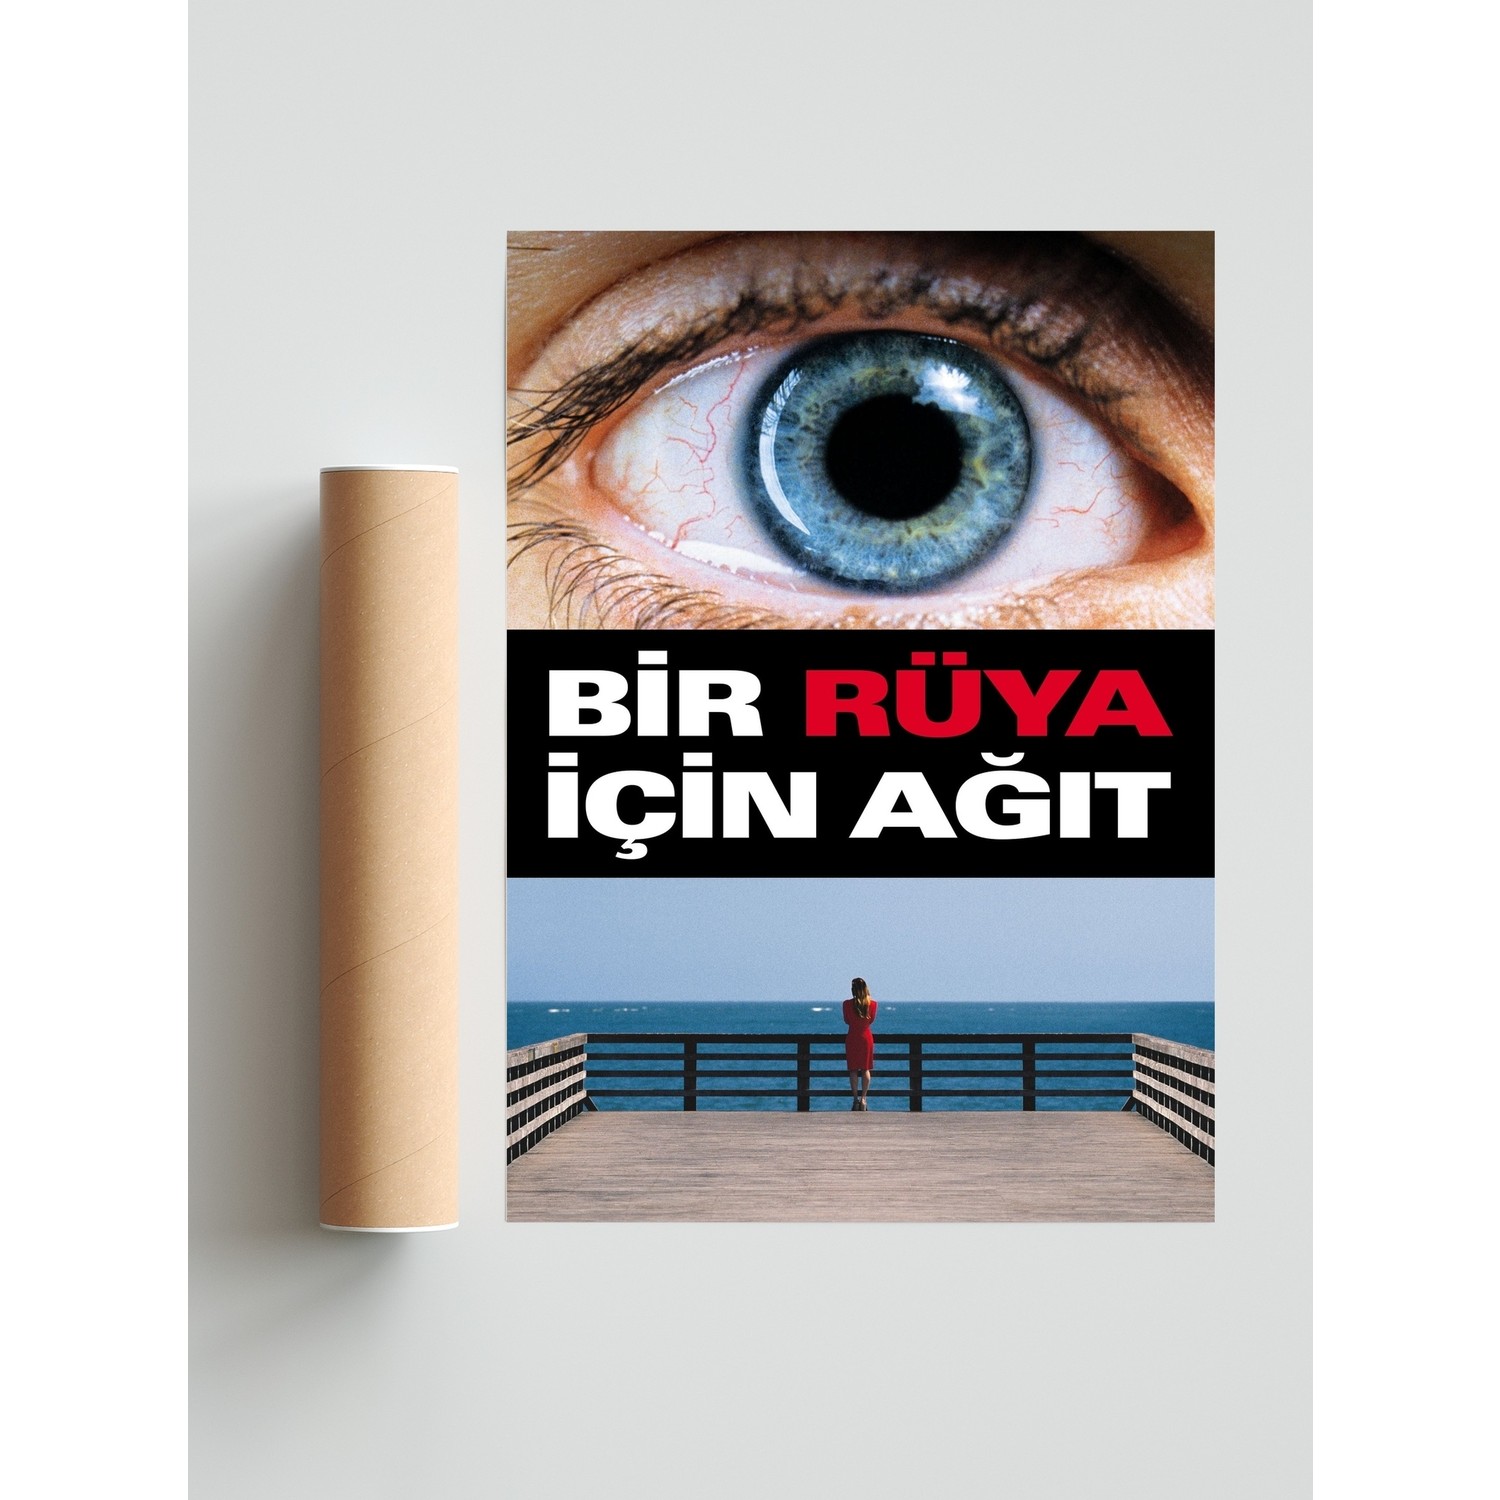 Bir Rüya Için Ağıt Türkçe Poster Fiyatı - Taksit Seçenekleri